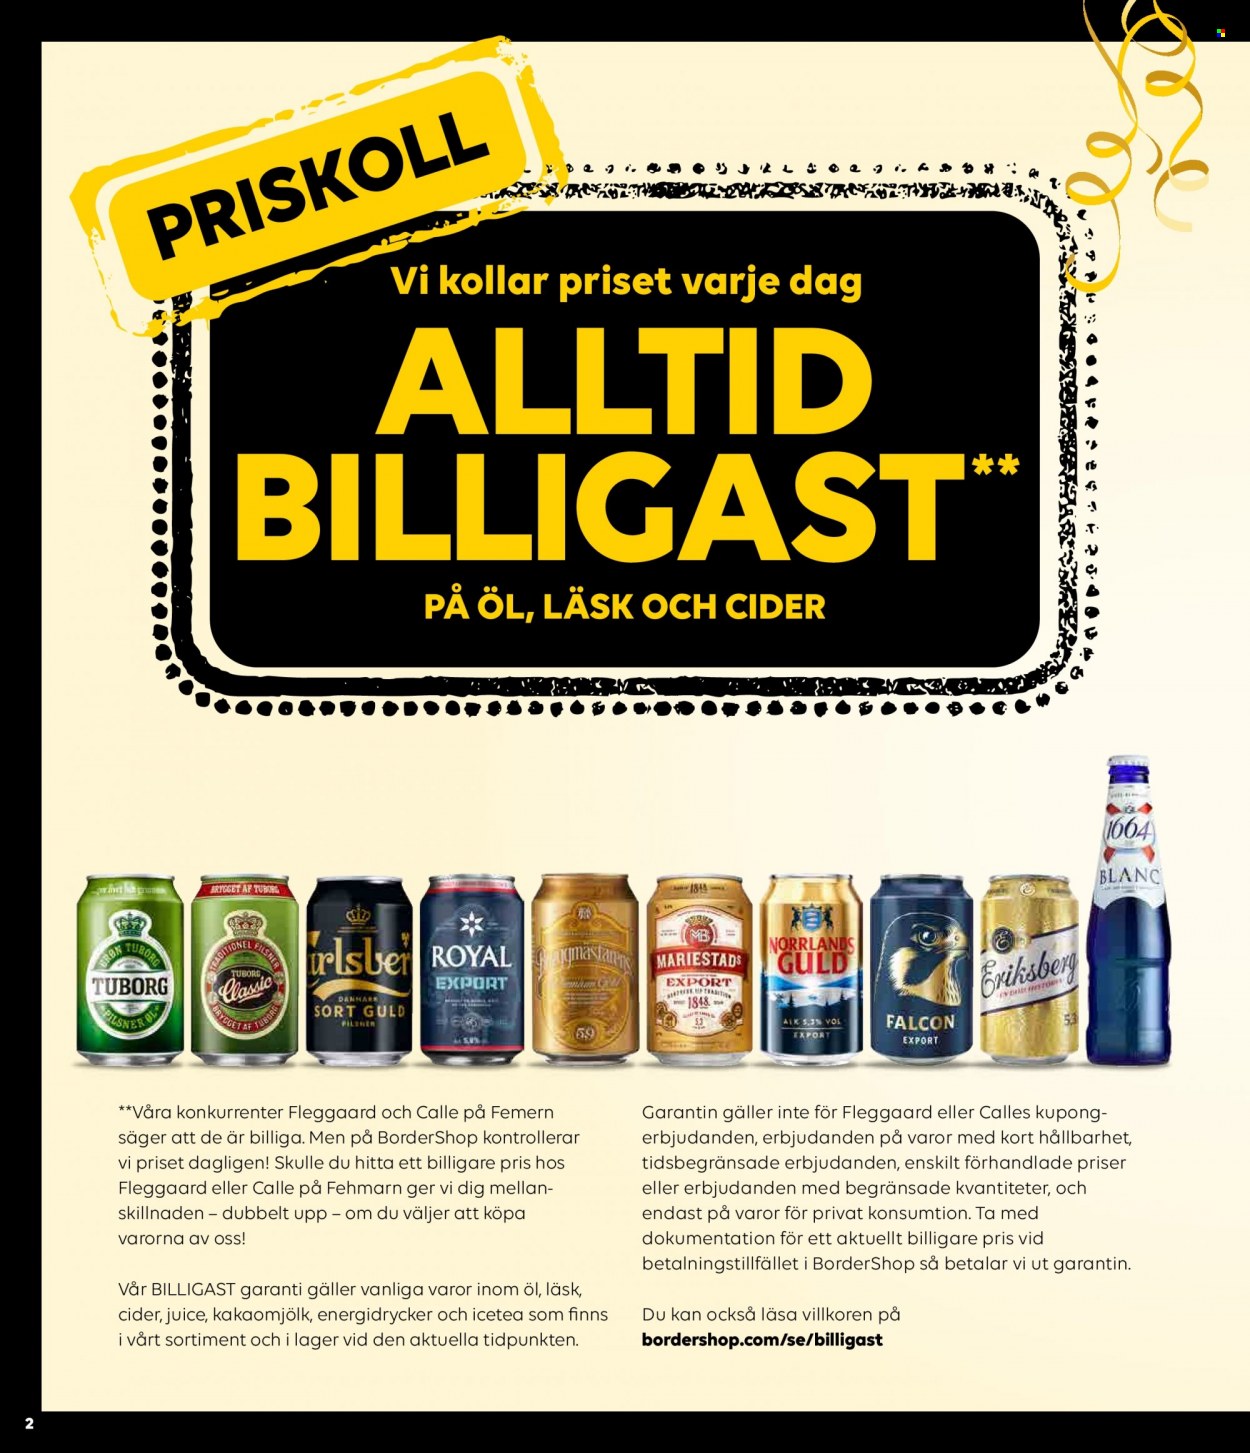 Border Shop reklamblad - 11/4 2023 - 6/6 2023 - varor från reklamblad - Carlsberg, starköl, Åbro, öl, cider, whisky, Ballantine's, Famous Grouse, Grant‘s. Sida 1.